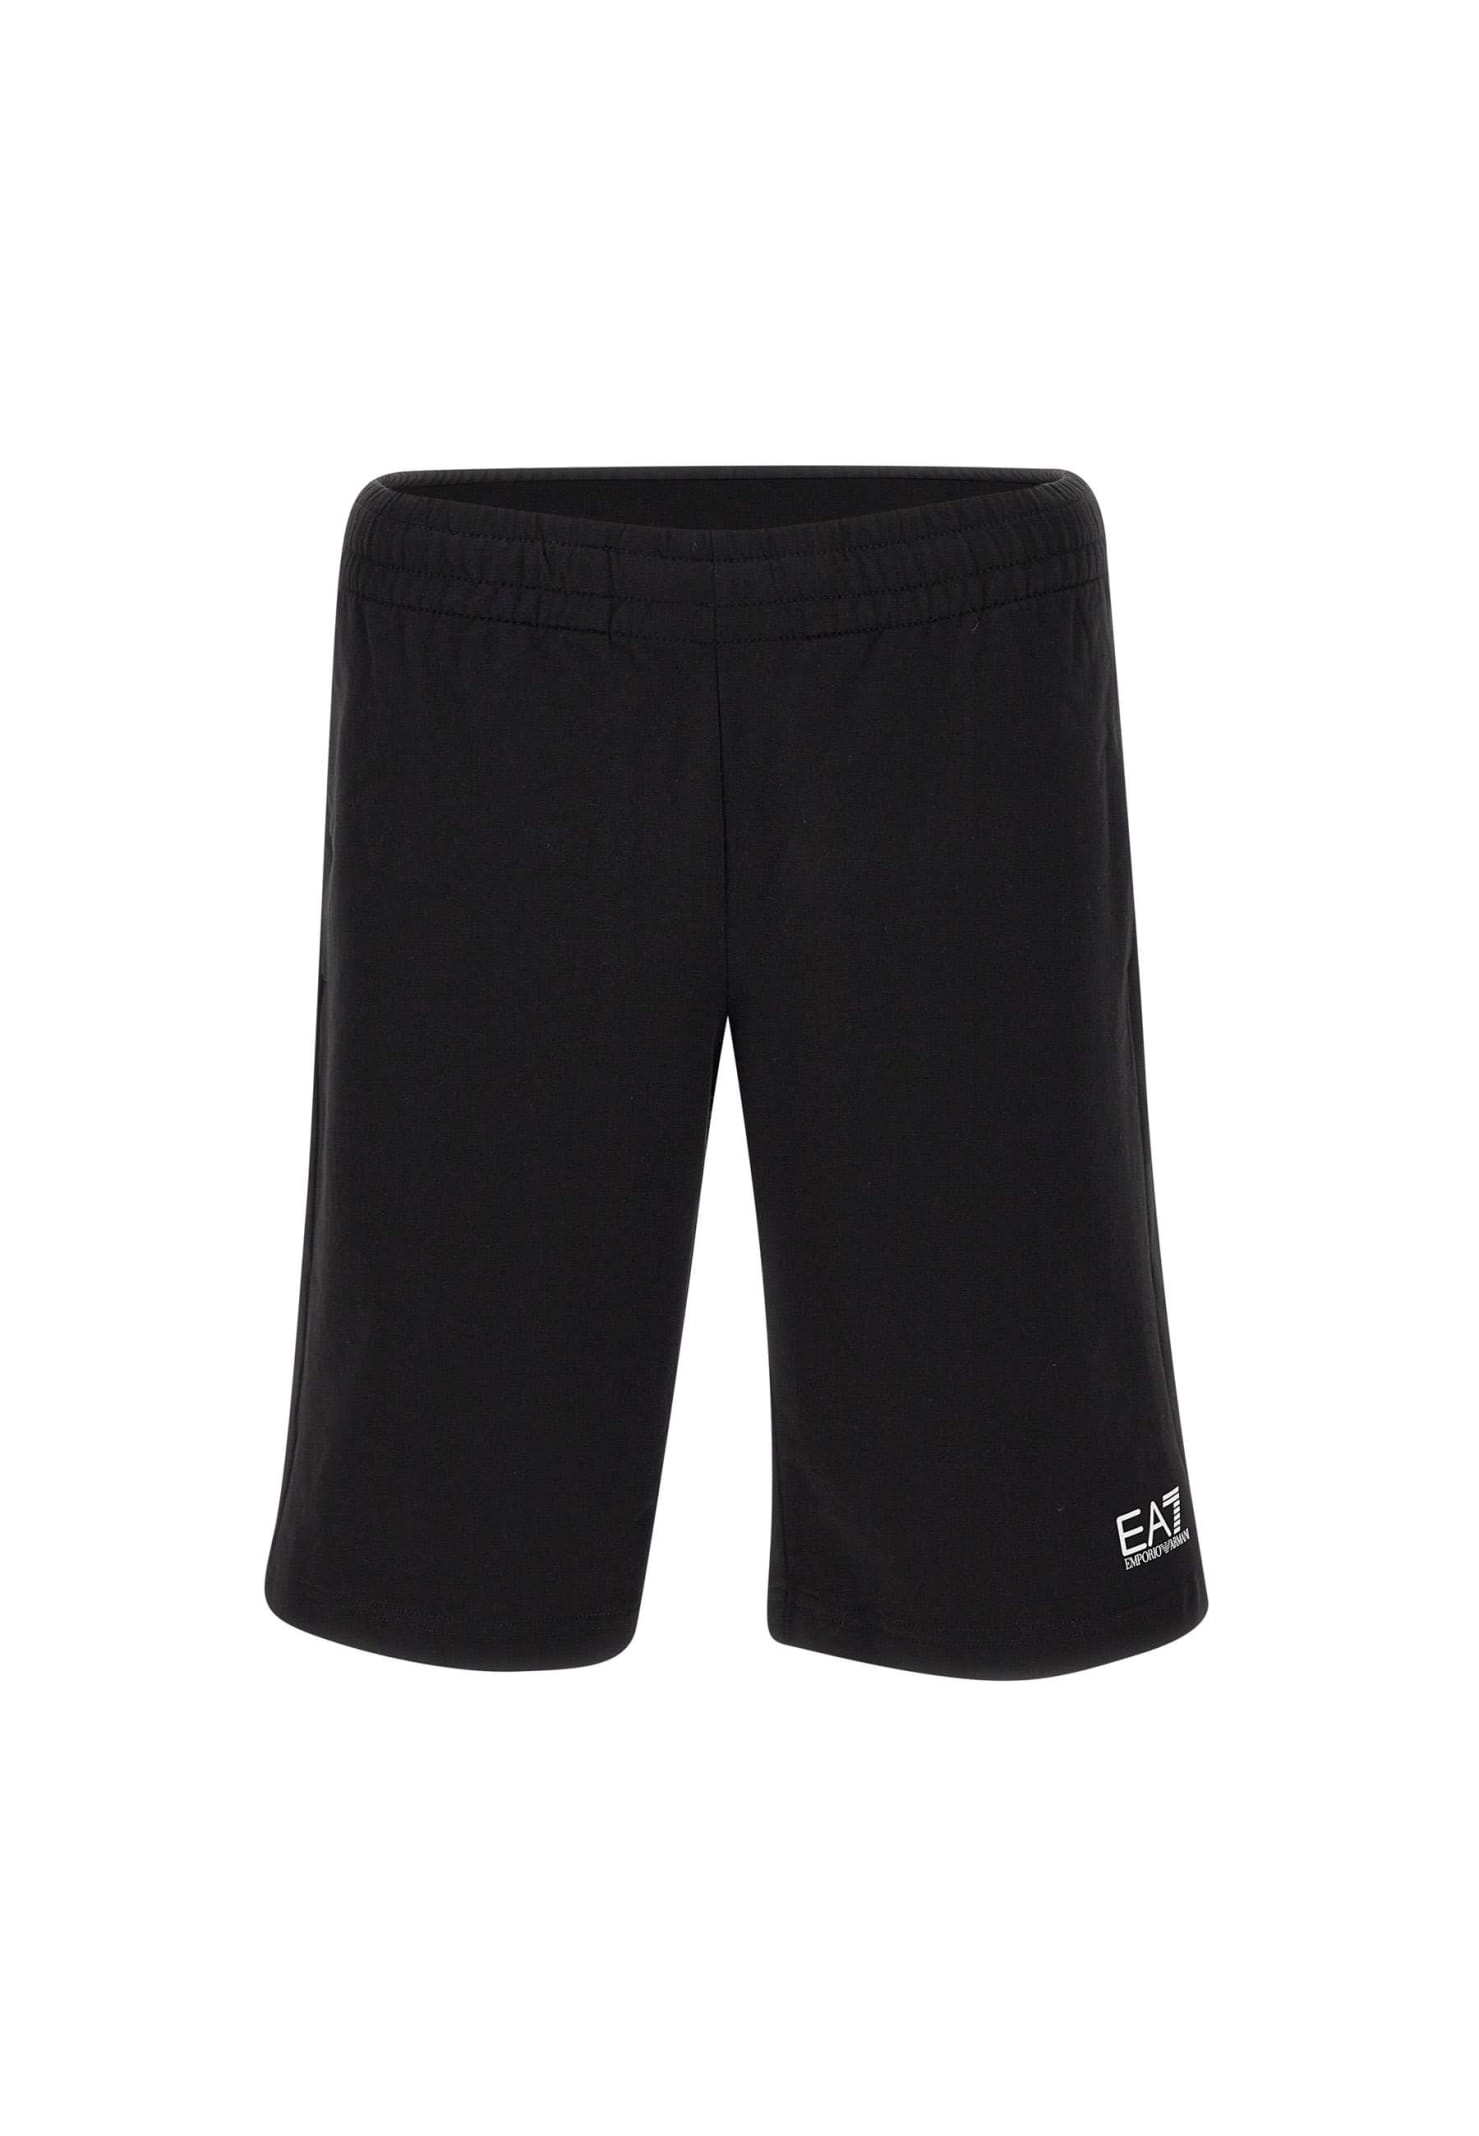 EA7 Shorts